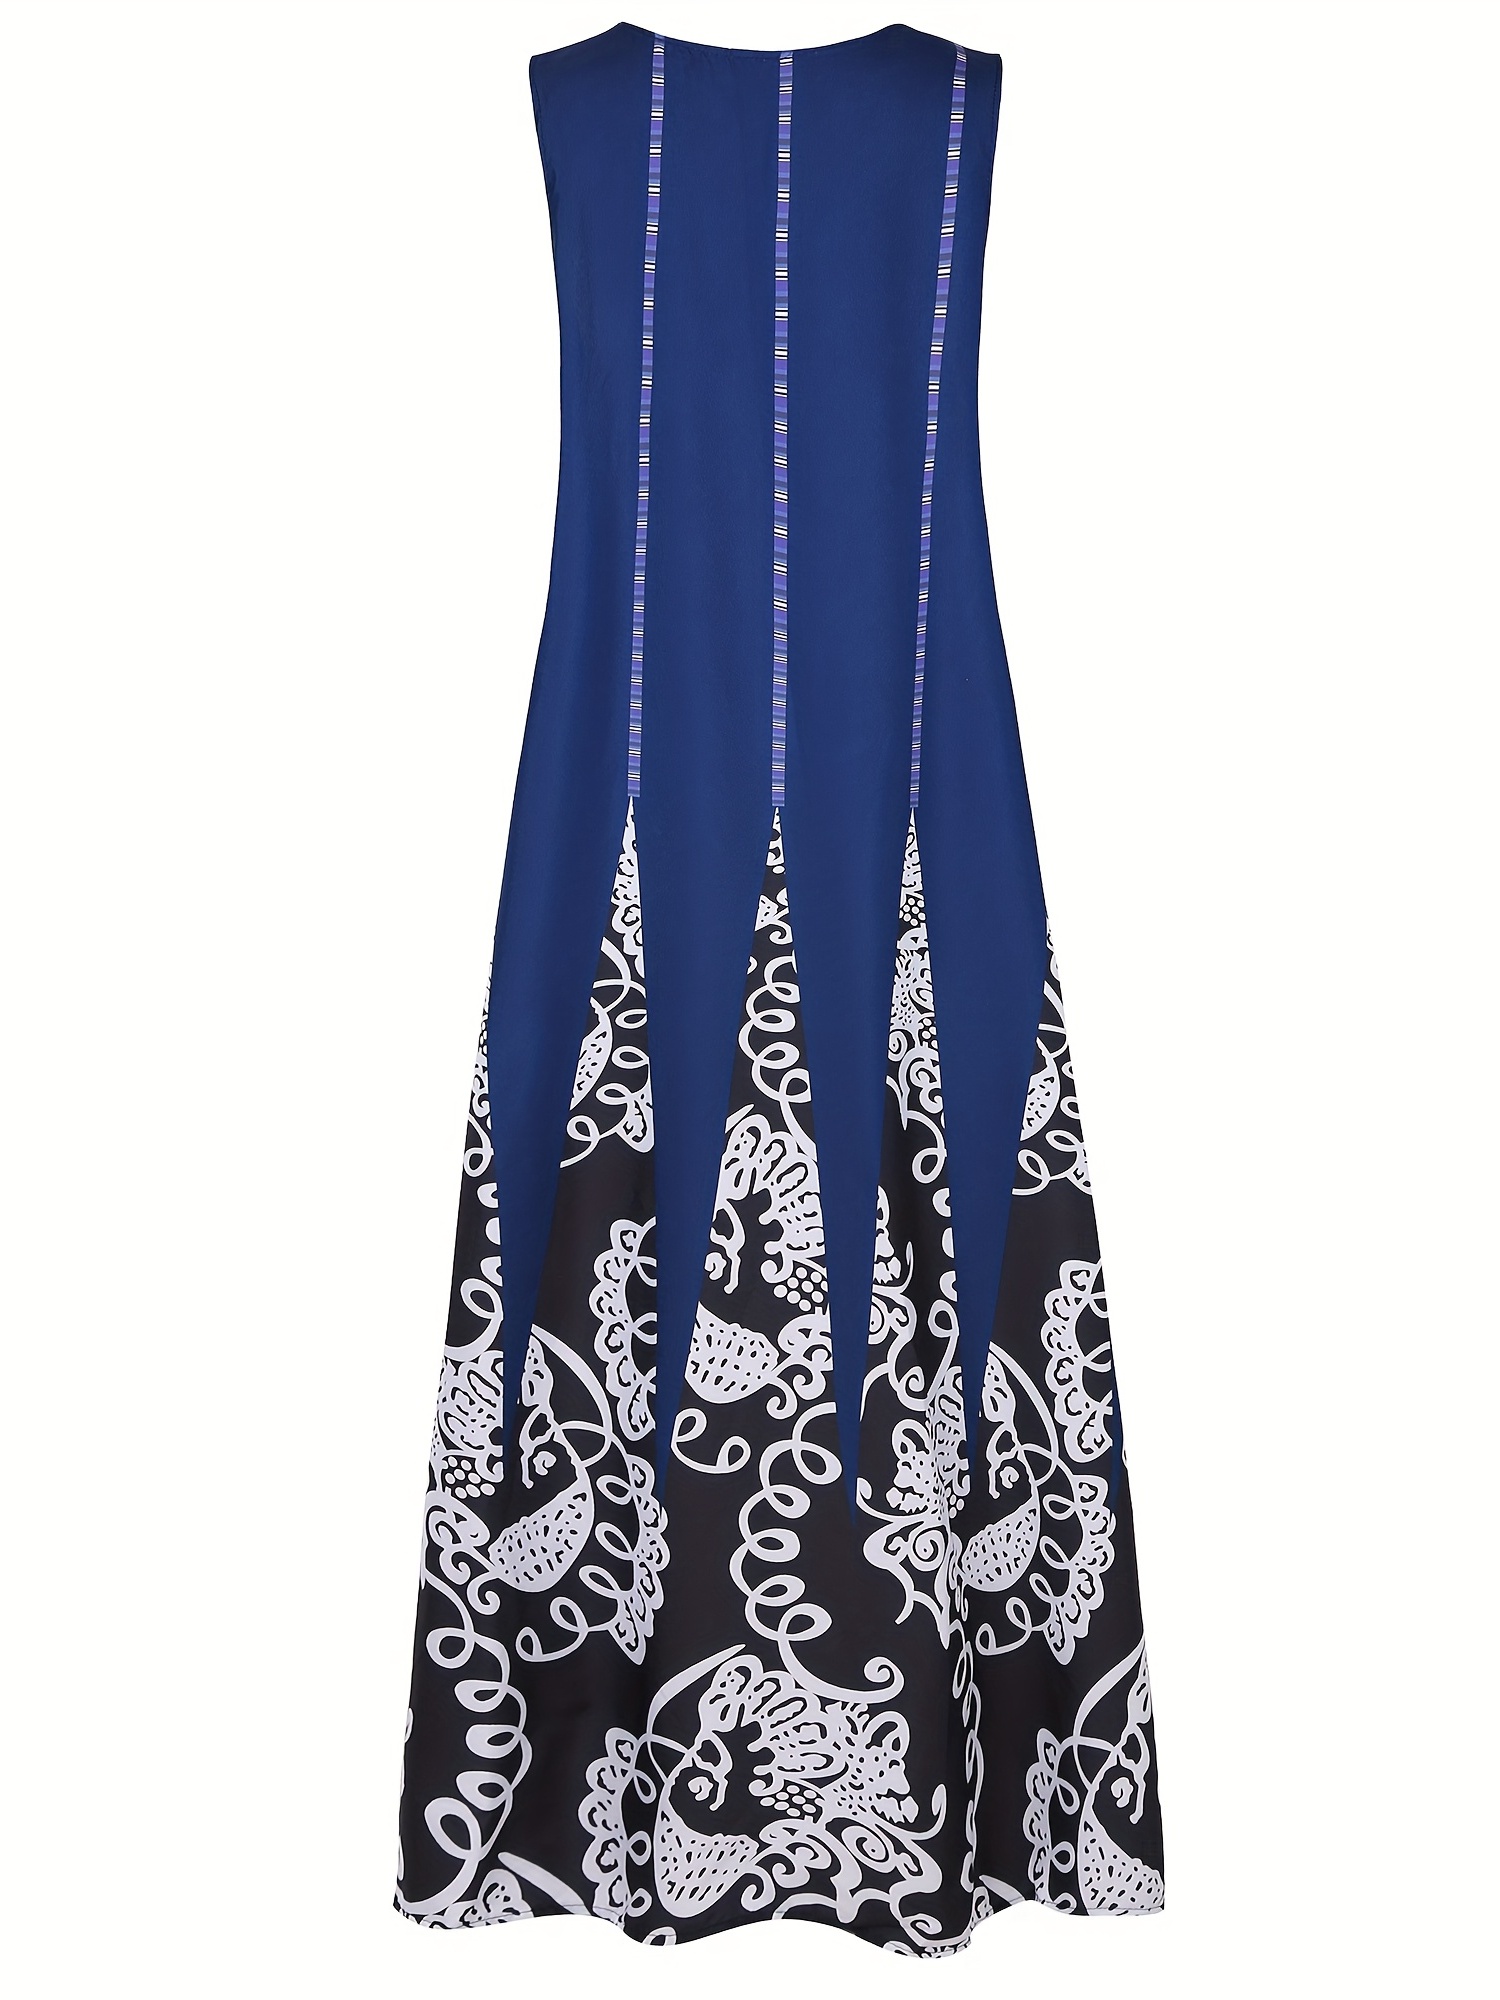 Φόρεμα με λουλούδια με λαιμόκοψη σε V, Vintage αμάνικο φόρεμα διπλής τσέπης, γυναικεία ρούχα